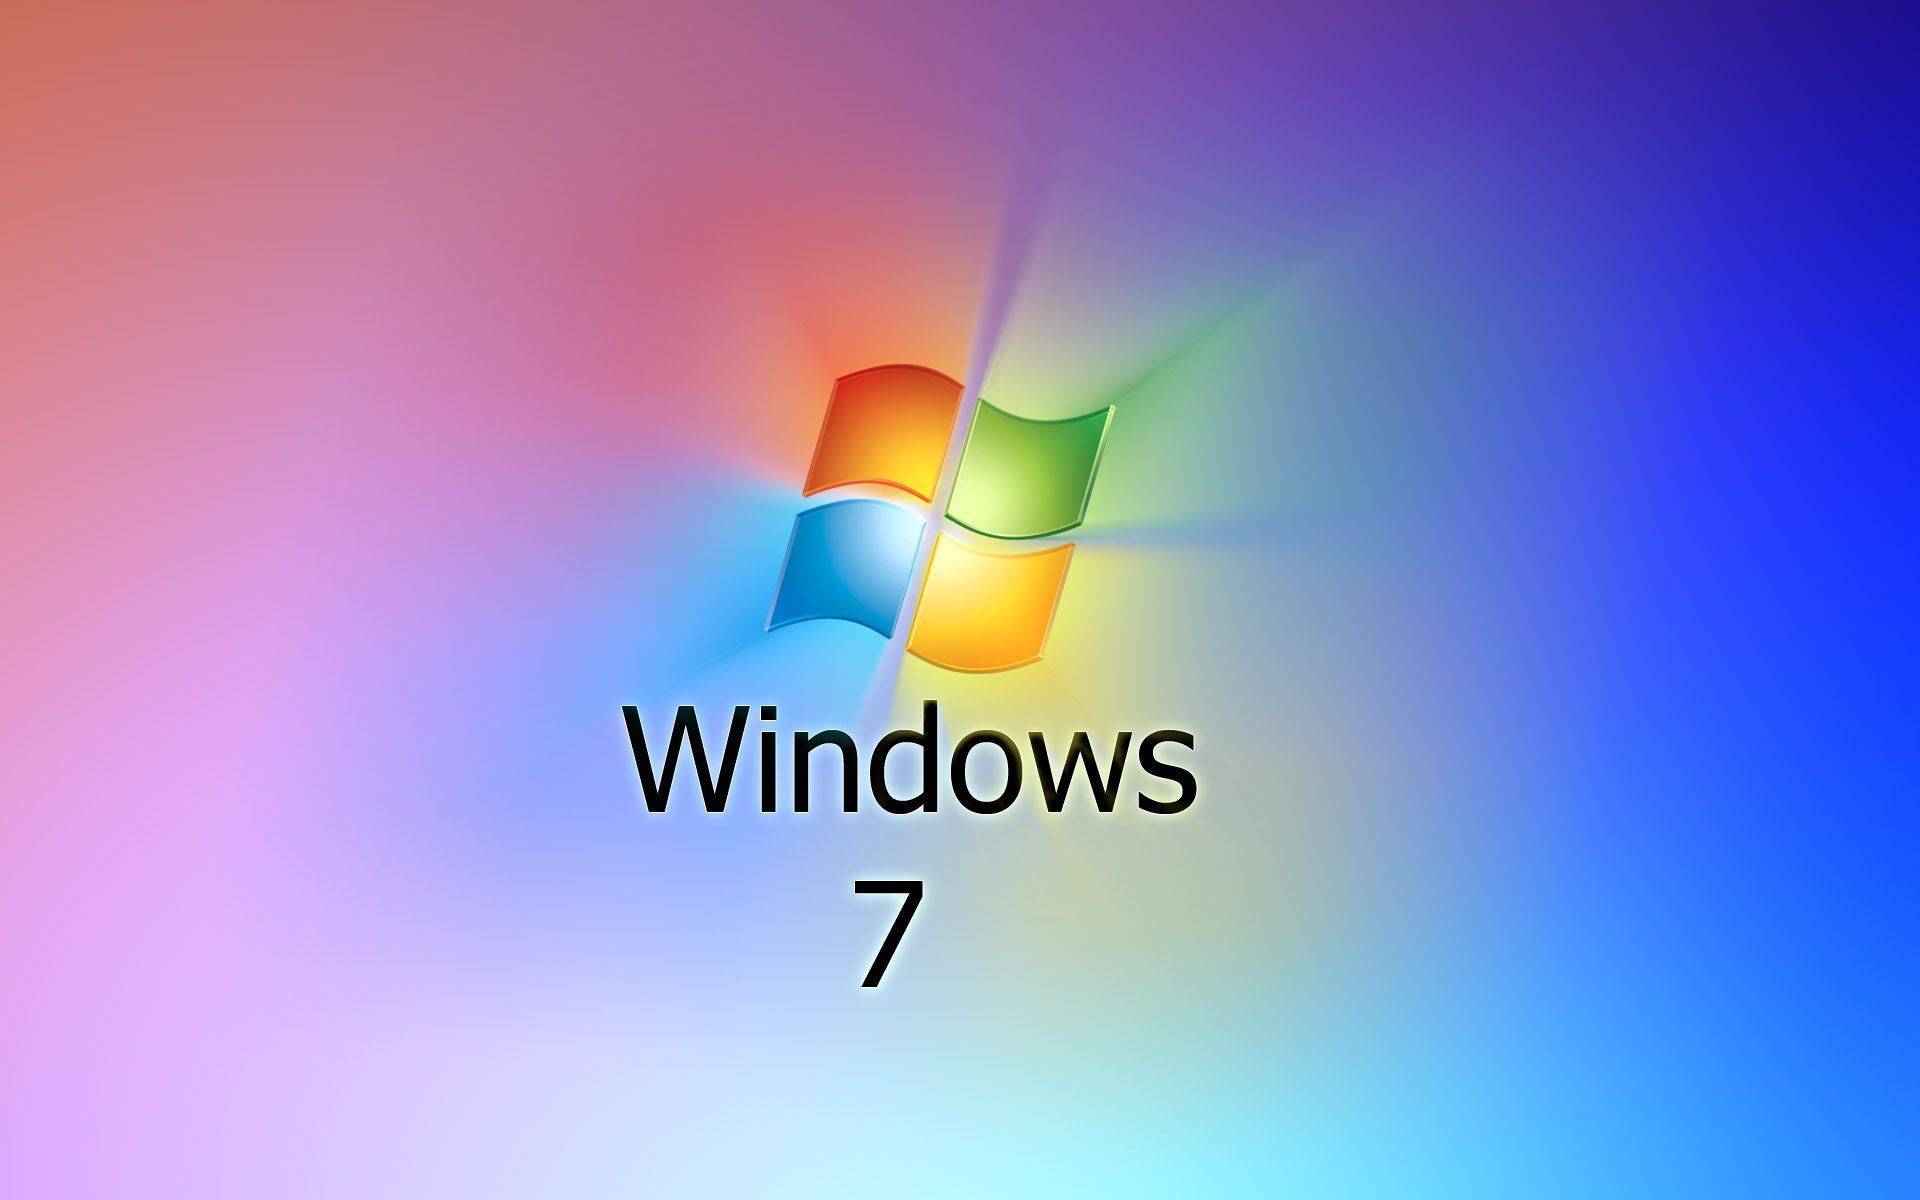 Bạn muốn có những hình nền Windows 7 chất lượng cao, độ phân giải cao nhất để thay thế cho những hình nền khác hiện đang trong máy tính của bạn? Hãy truy cập vào trang web của chúng tôi và tải về 37 tấm hình nền đẹp và sắc nét nhất cho Windows